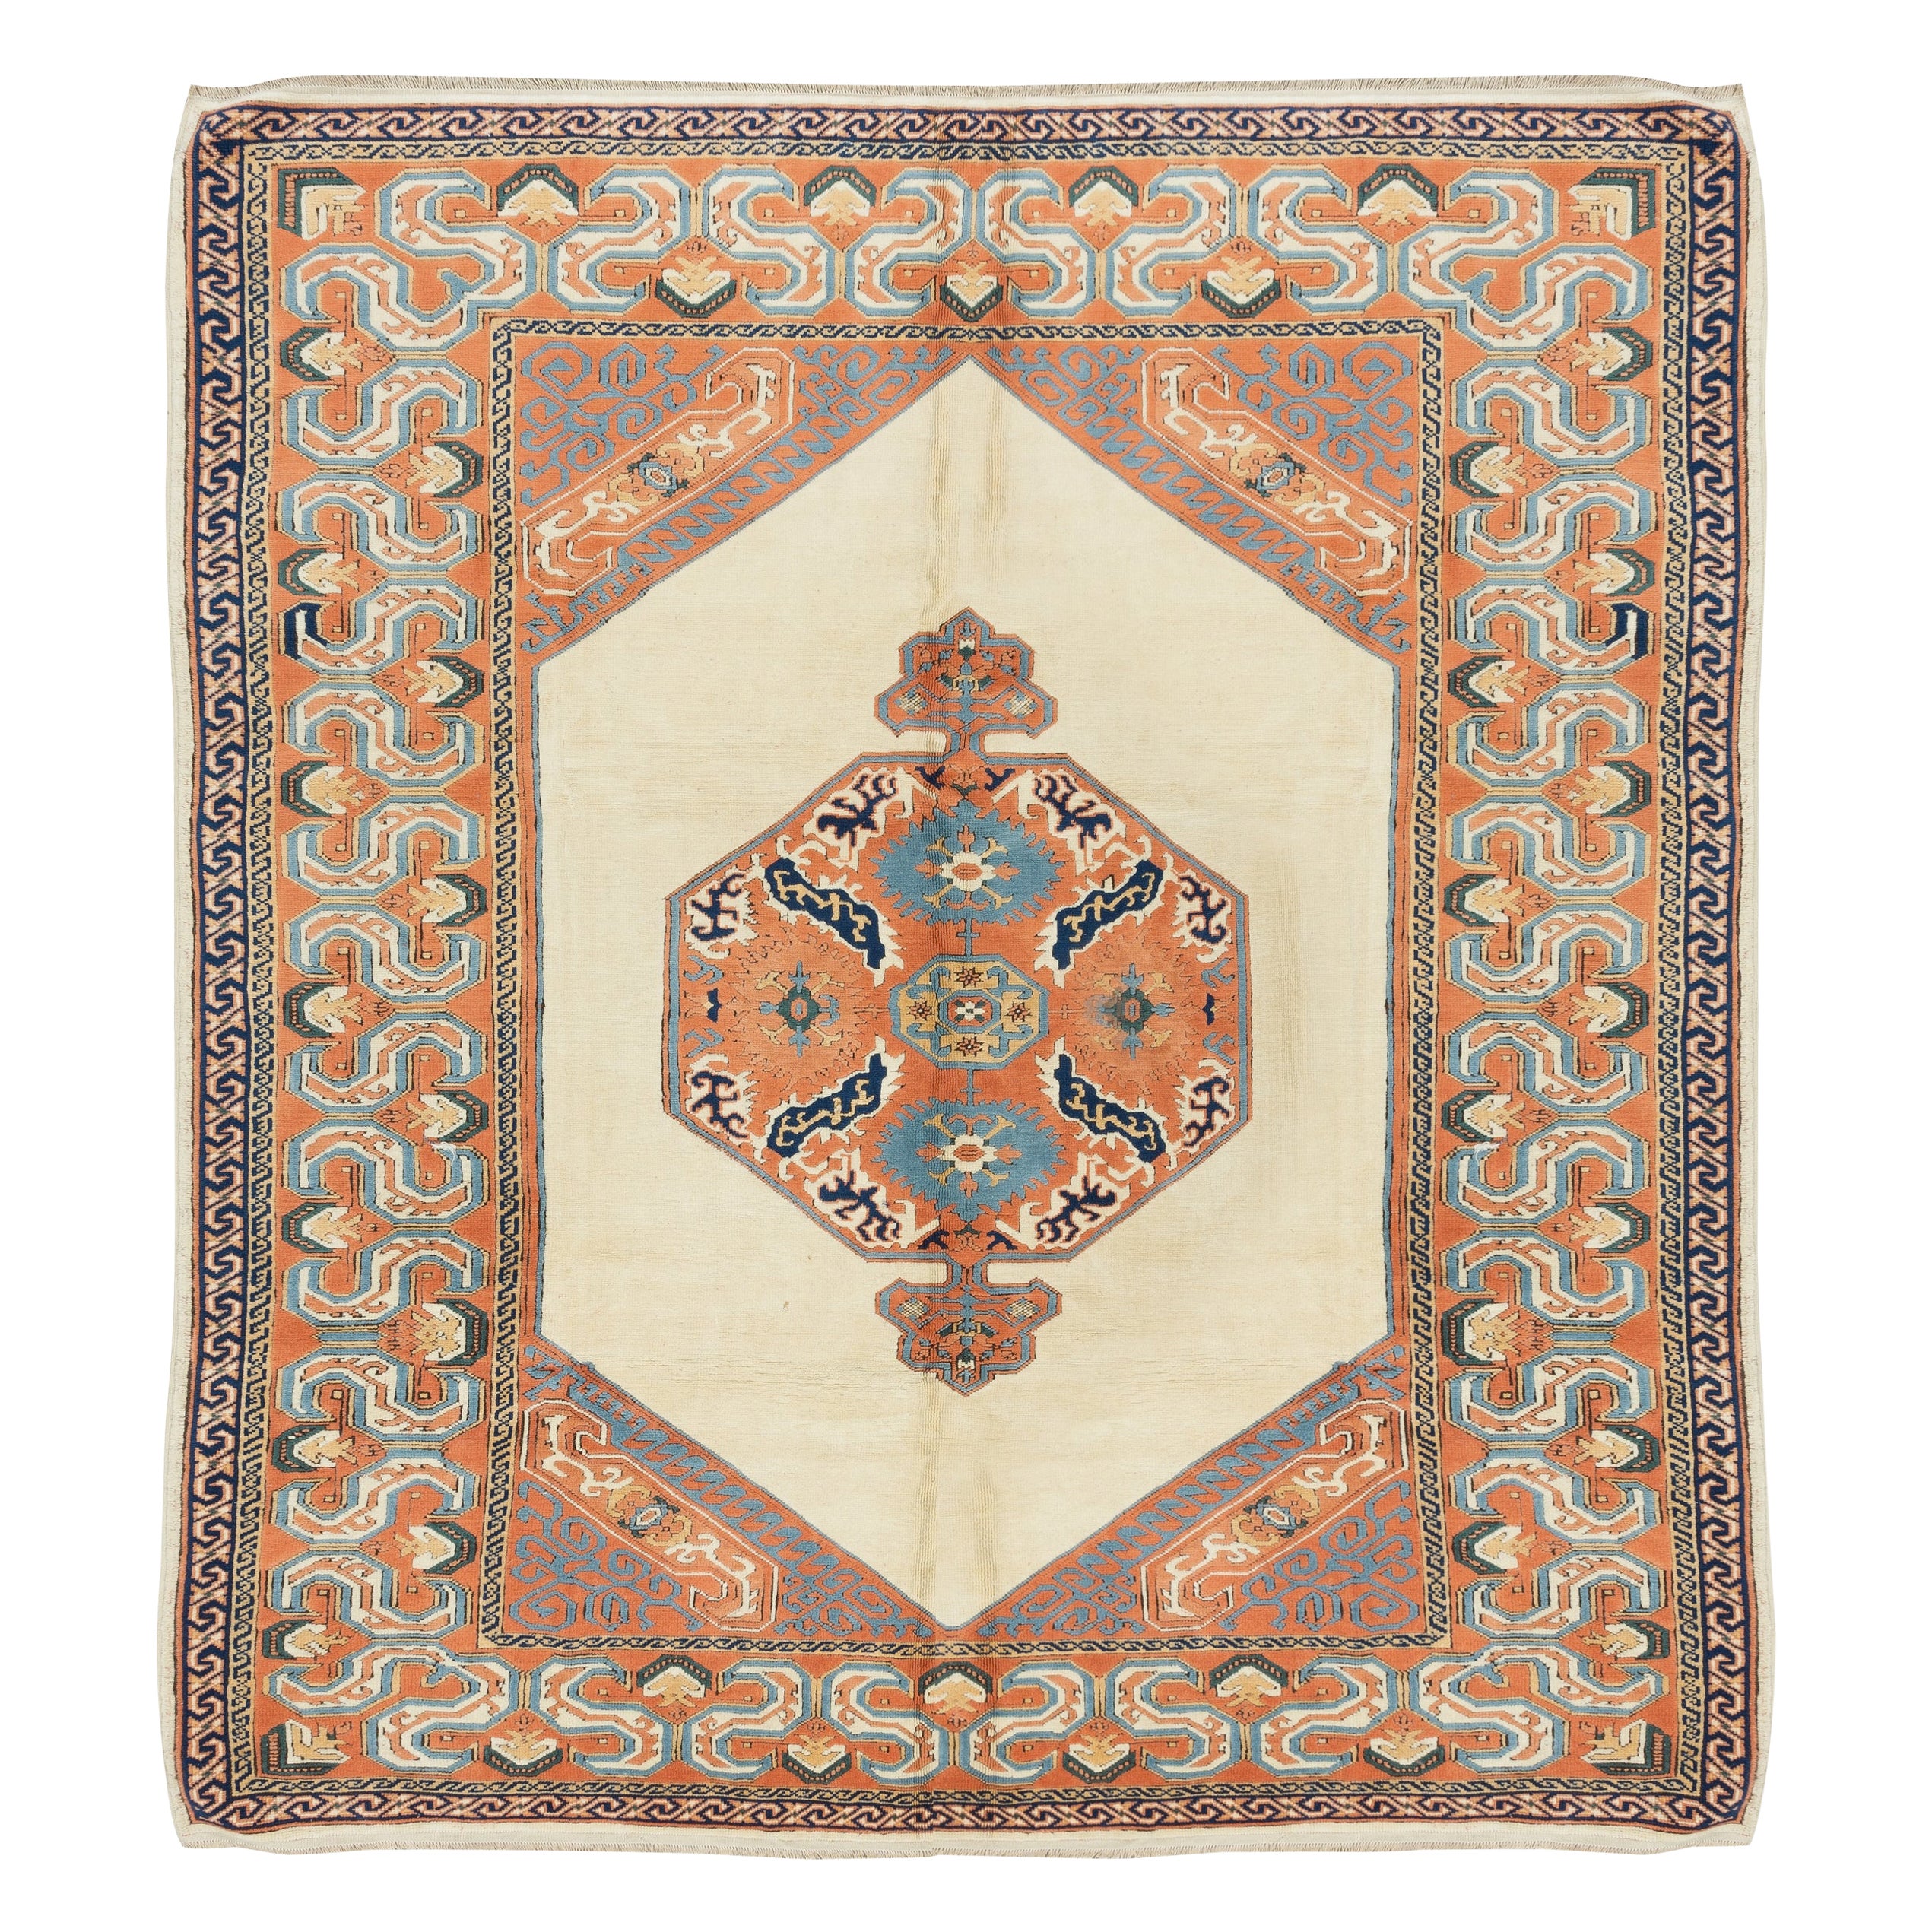 8.3x9.8 Ft Handgefertigter Türkischer Teppich, Moderner Dekorativer Teppich, 100% Wolle